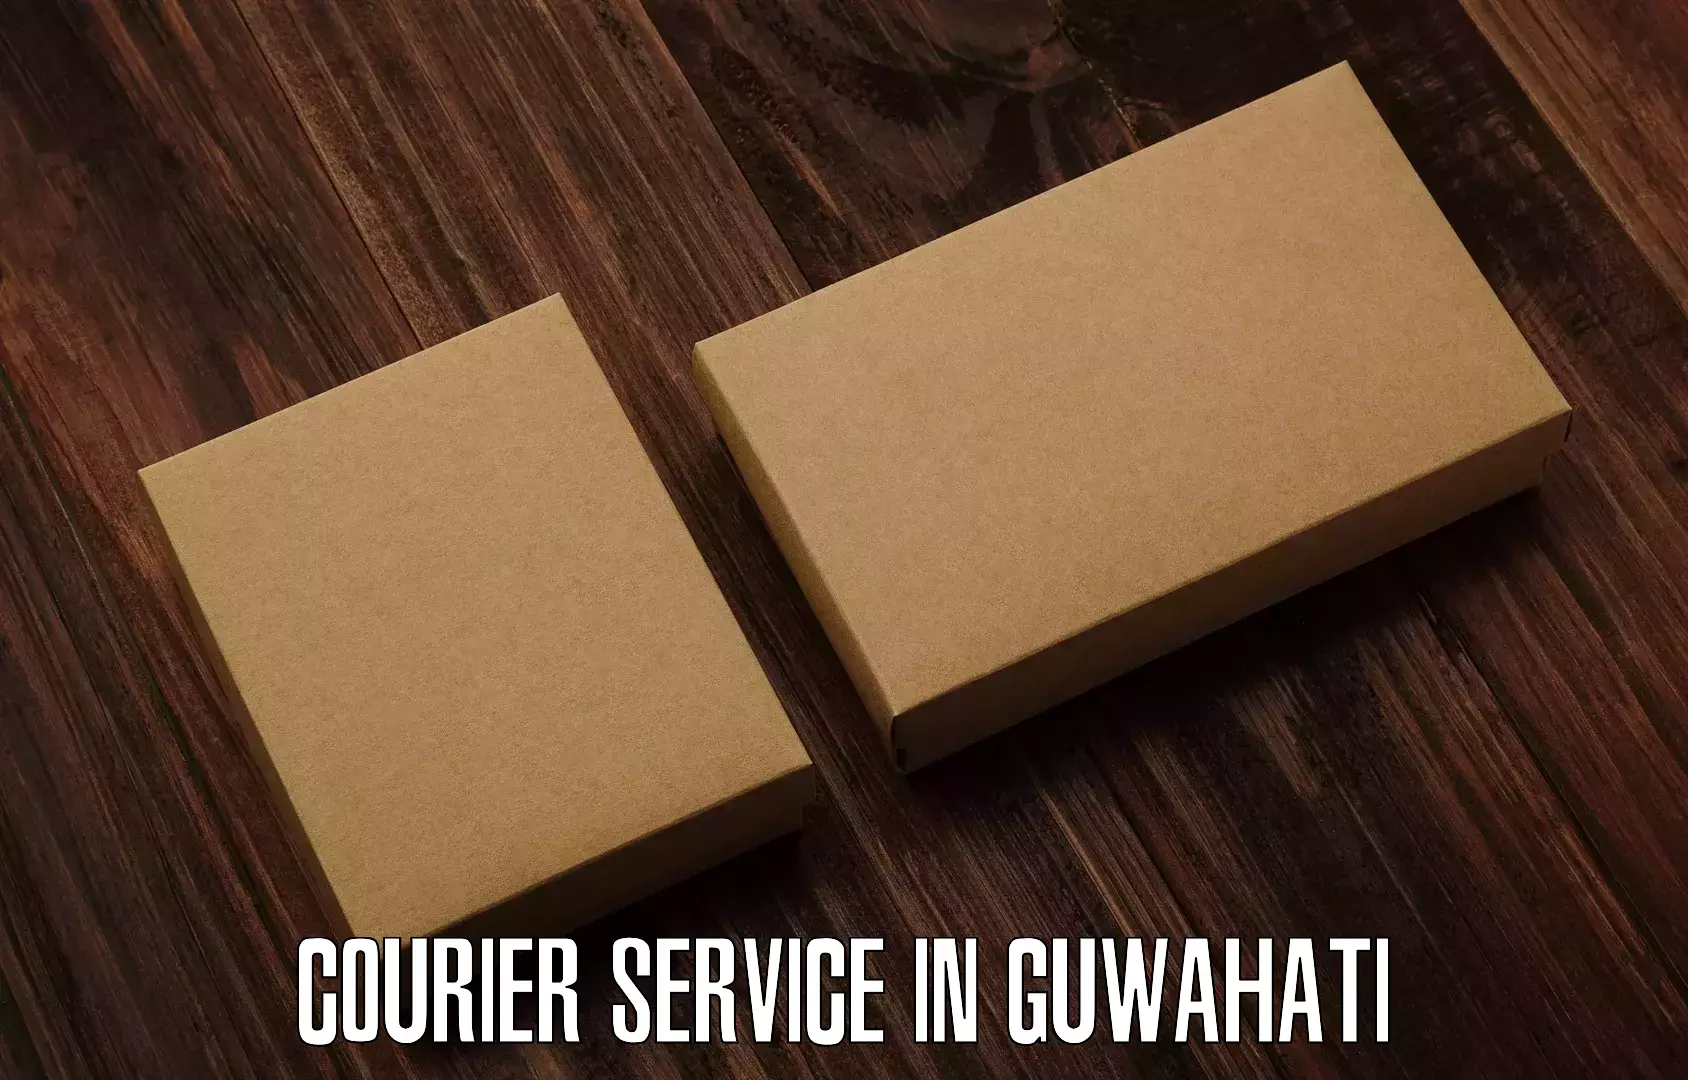 Advanced courier platforms in Guwahati